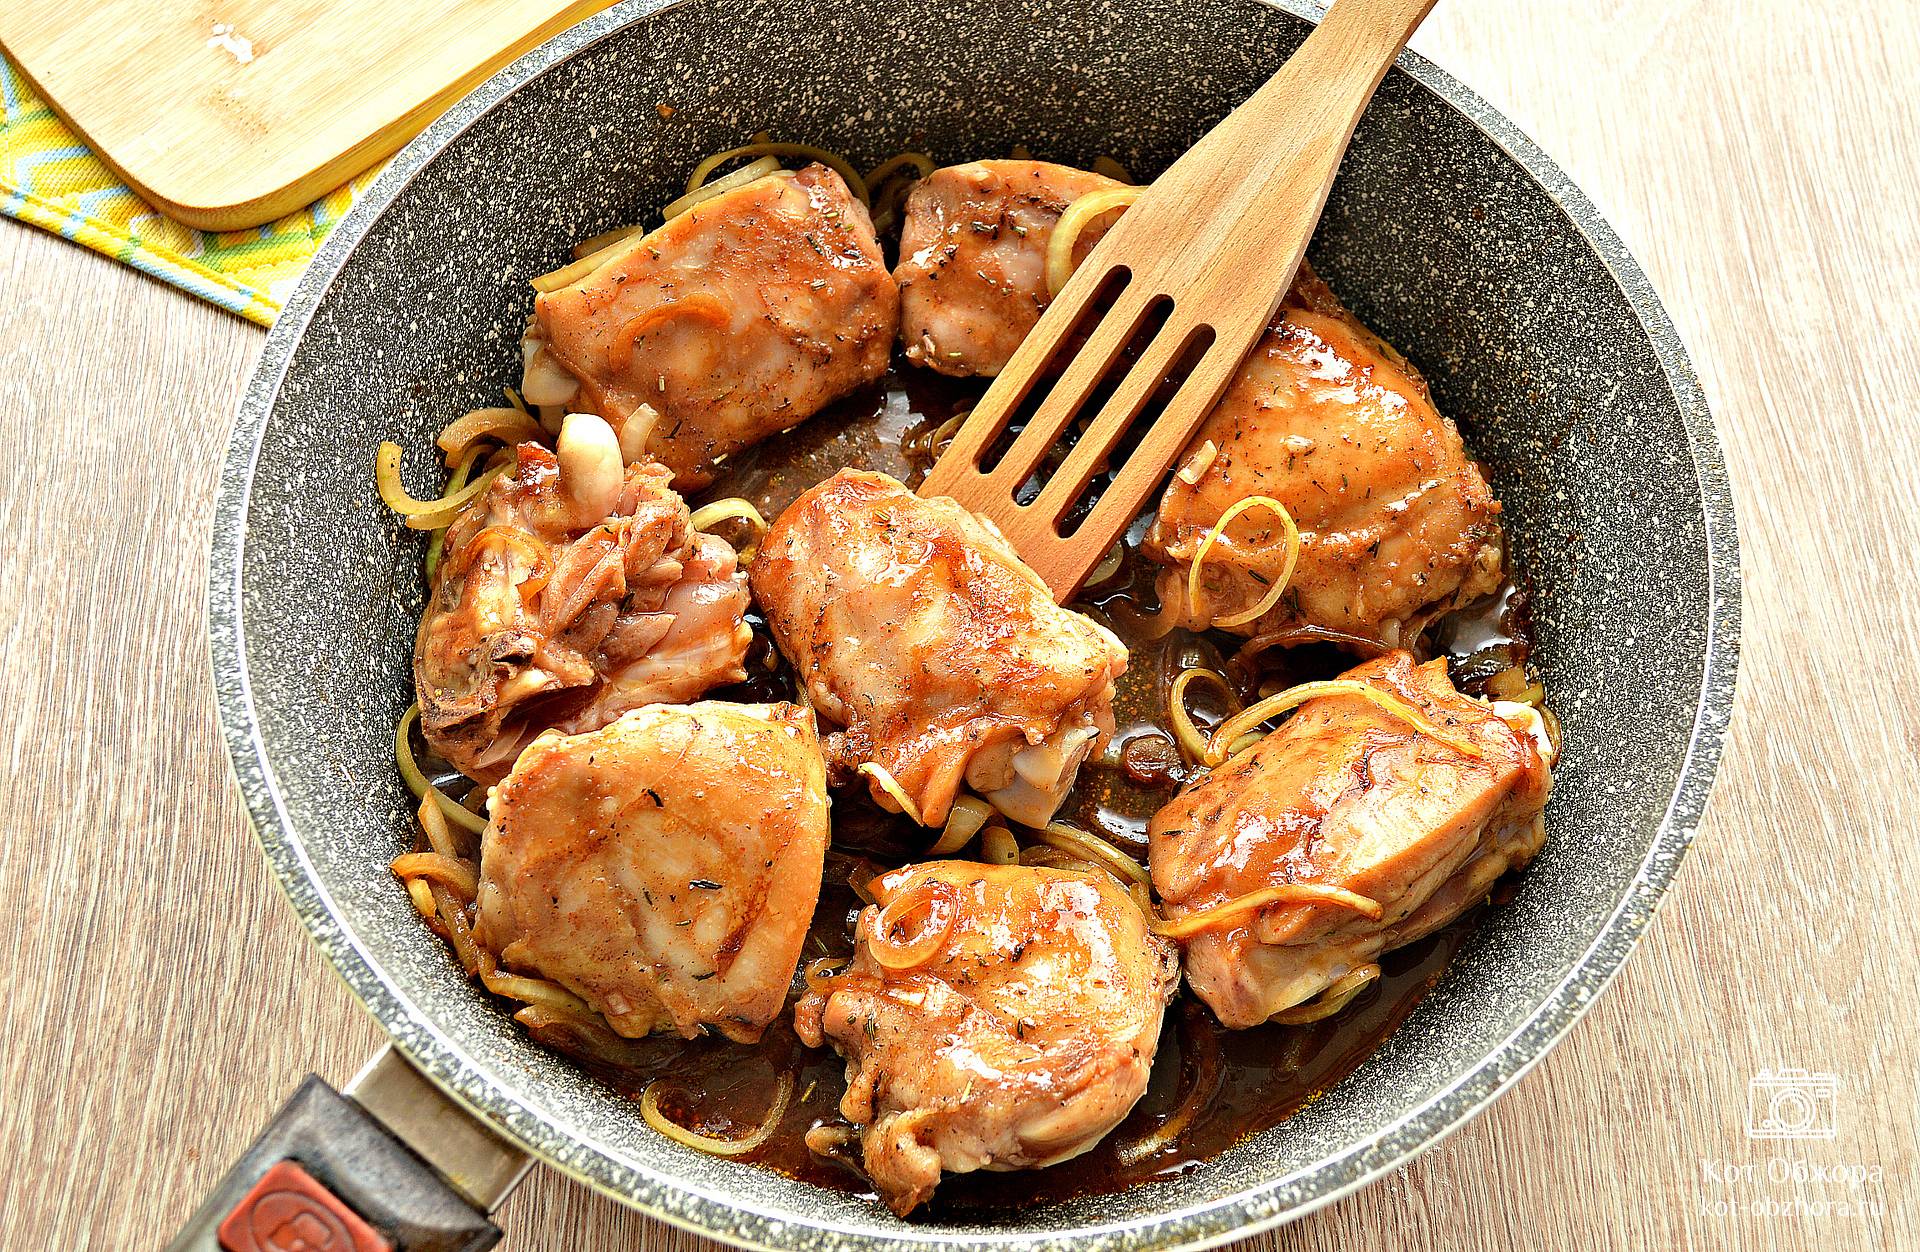 Курица в соевом соусе на сковороде — пошаговый рецепт с фото